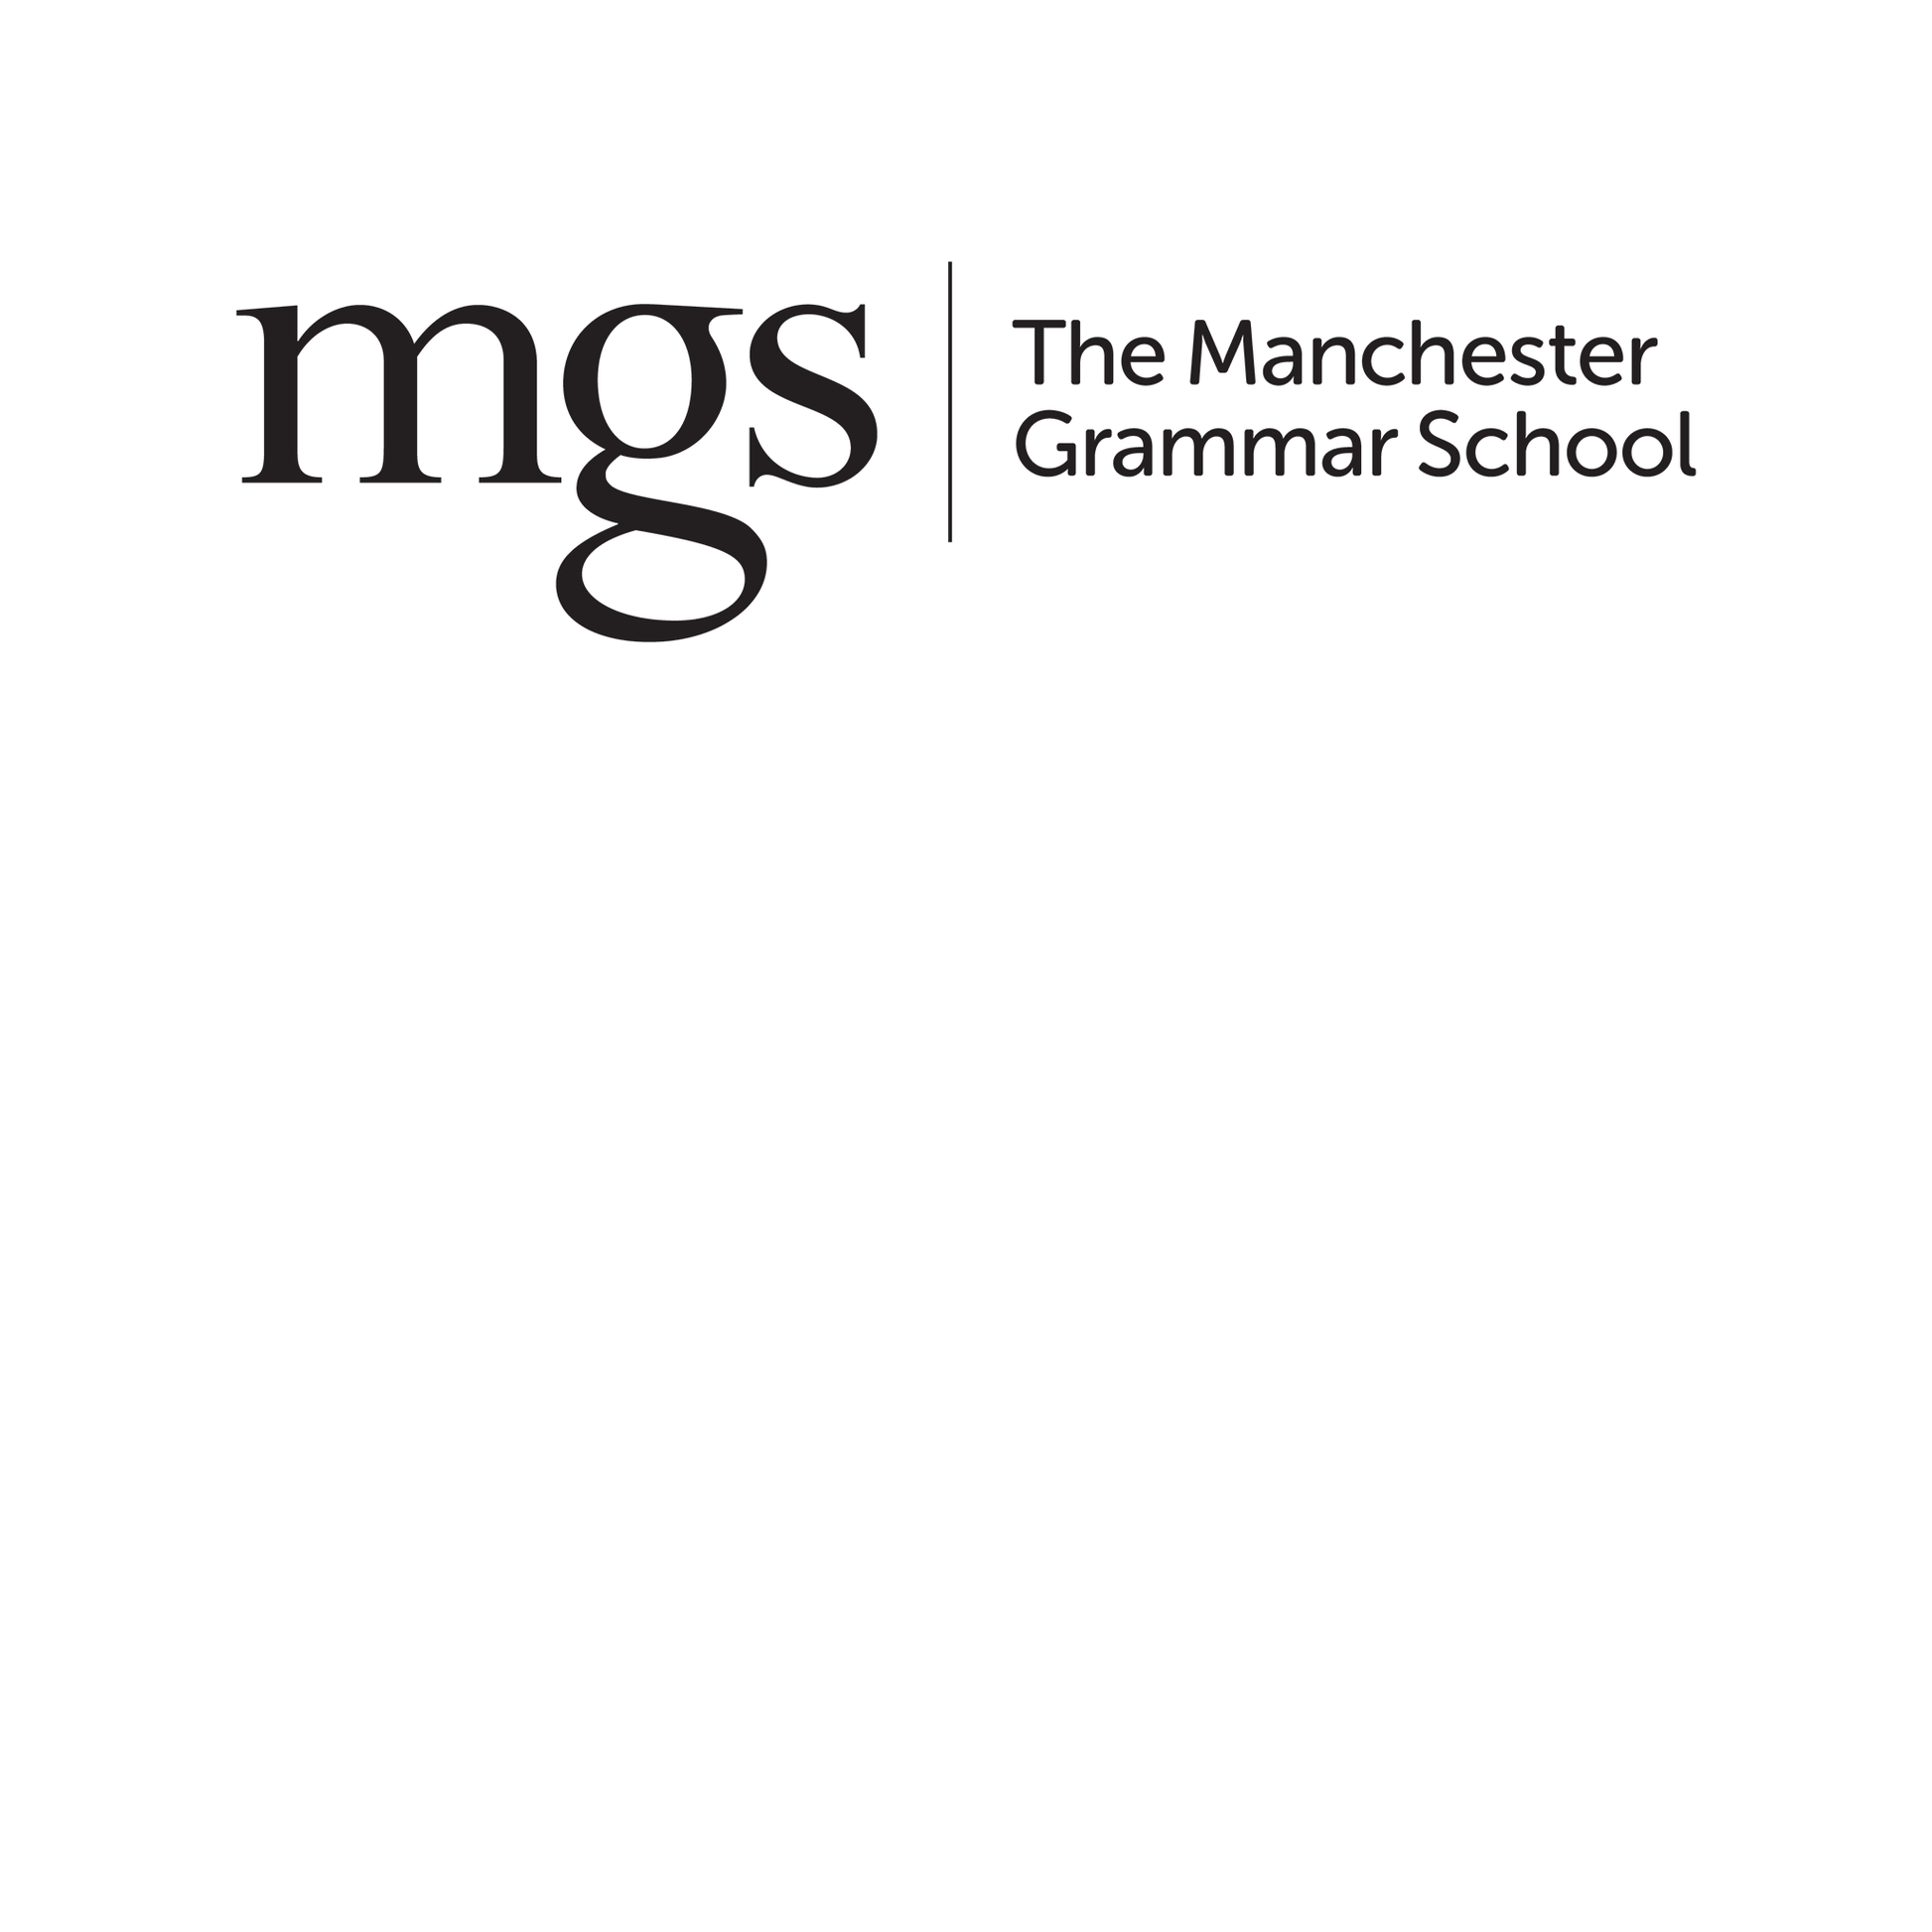 The Manchester Grammar School: 11+ Maths (2016) [269]